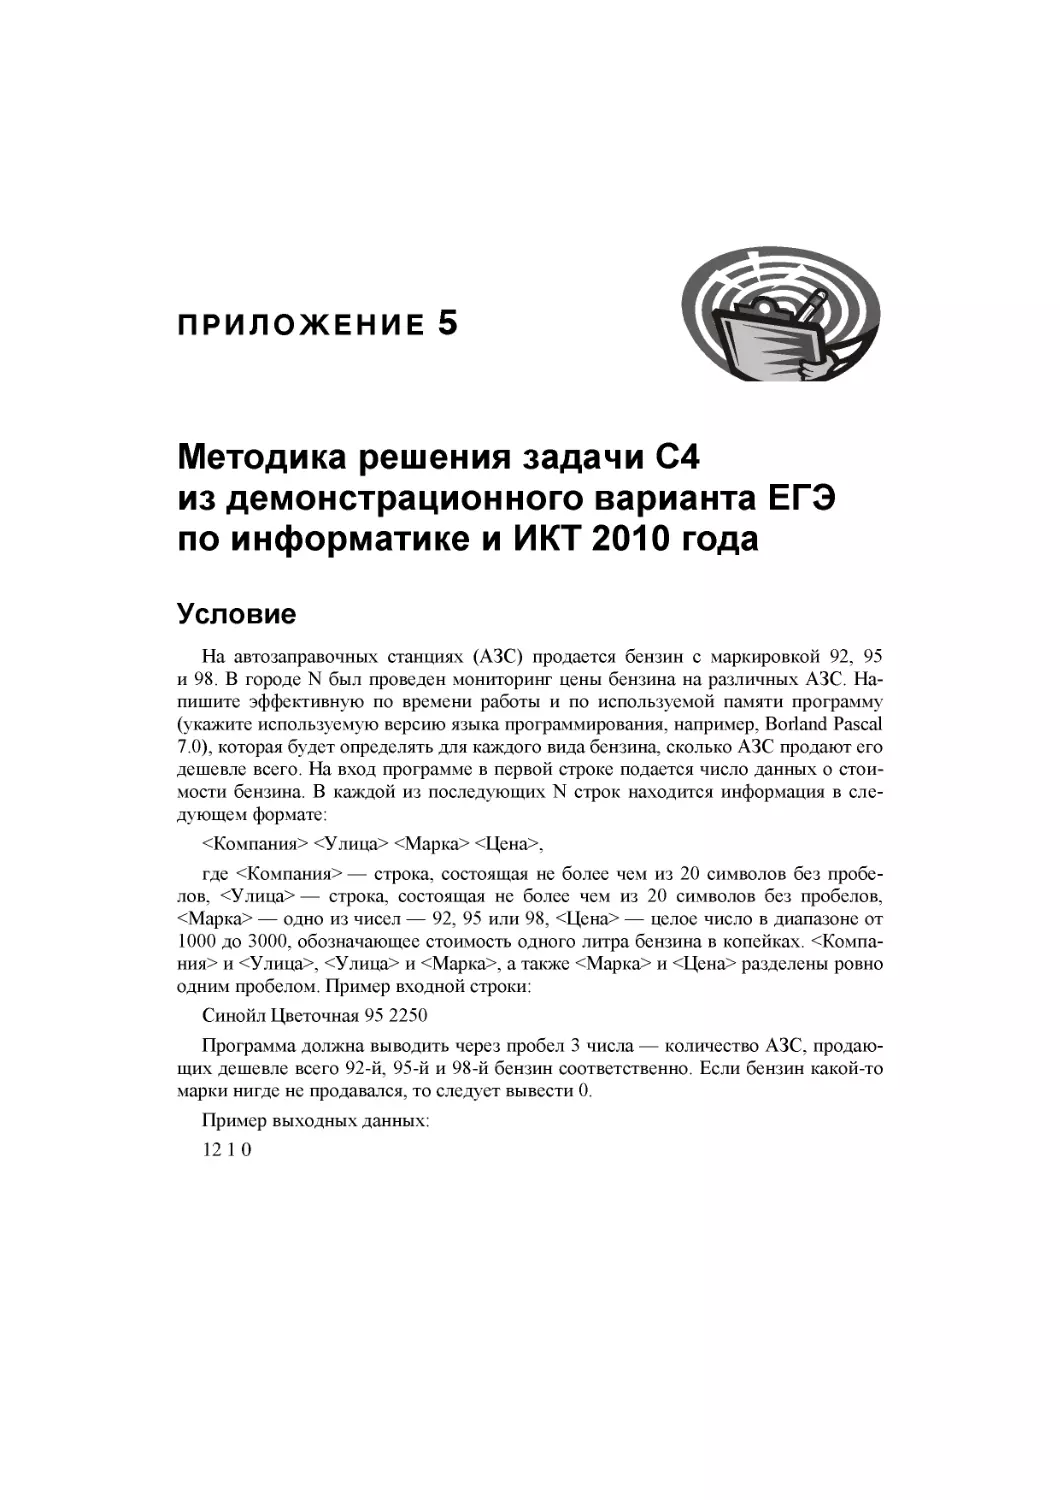 Приложение 5. Методика решения задачи С4  из демонстрационного варианта ЕГЭ  по информатике и ИКТ 2010 года
Условие